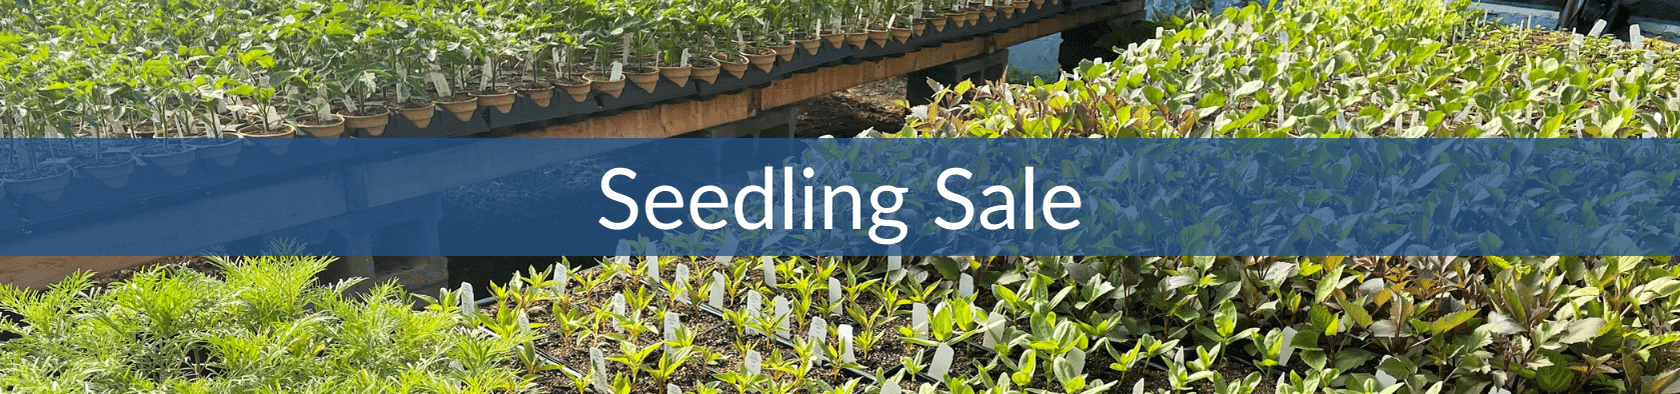 Seedling Sales (1).png__PID:73d218a7-c28a-4fcf-924b-8f3009b5e34a